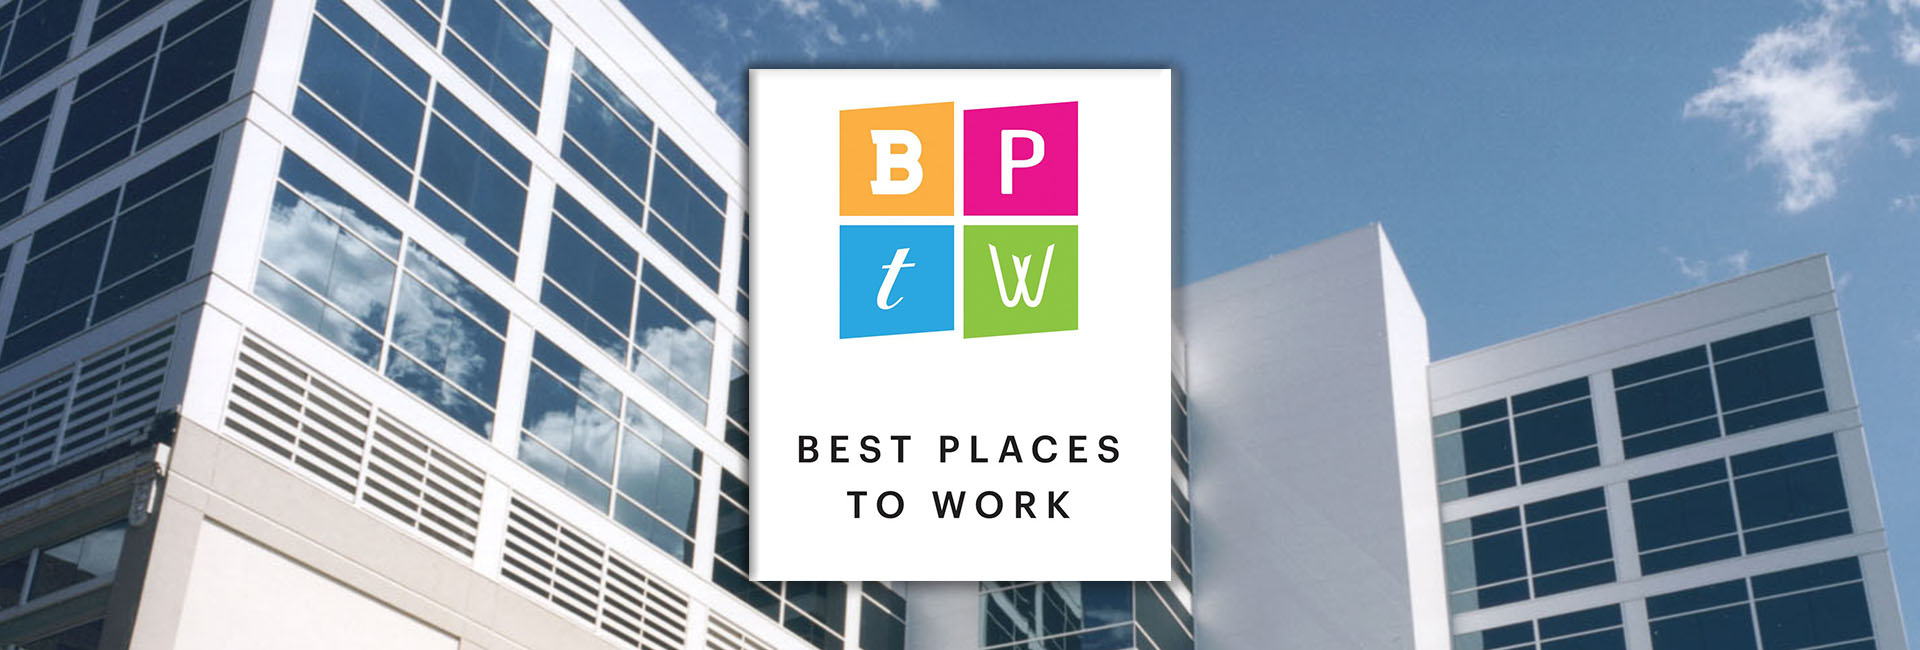 Al. Neyer Named 2020 Best Places to Work Finalist by Cincinnati